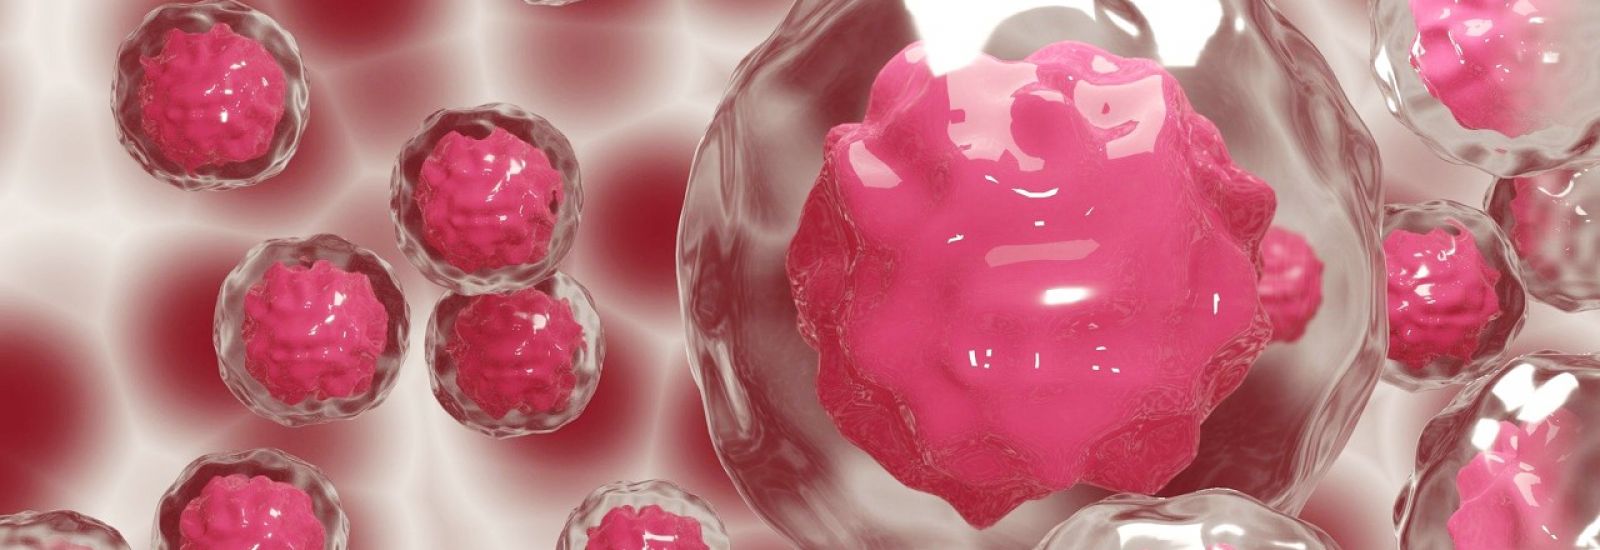 Visualisation of pink coloured stem cells